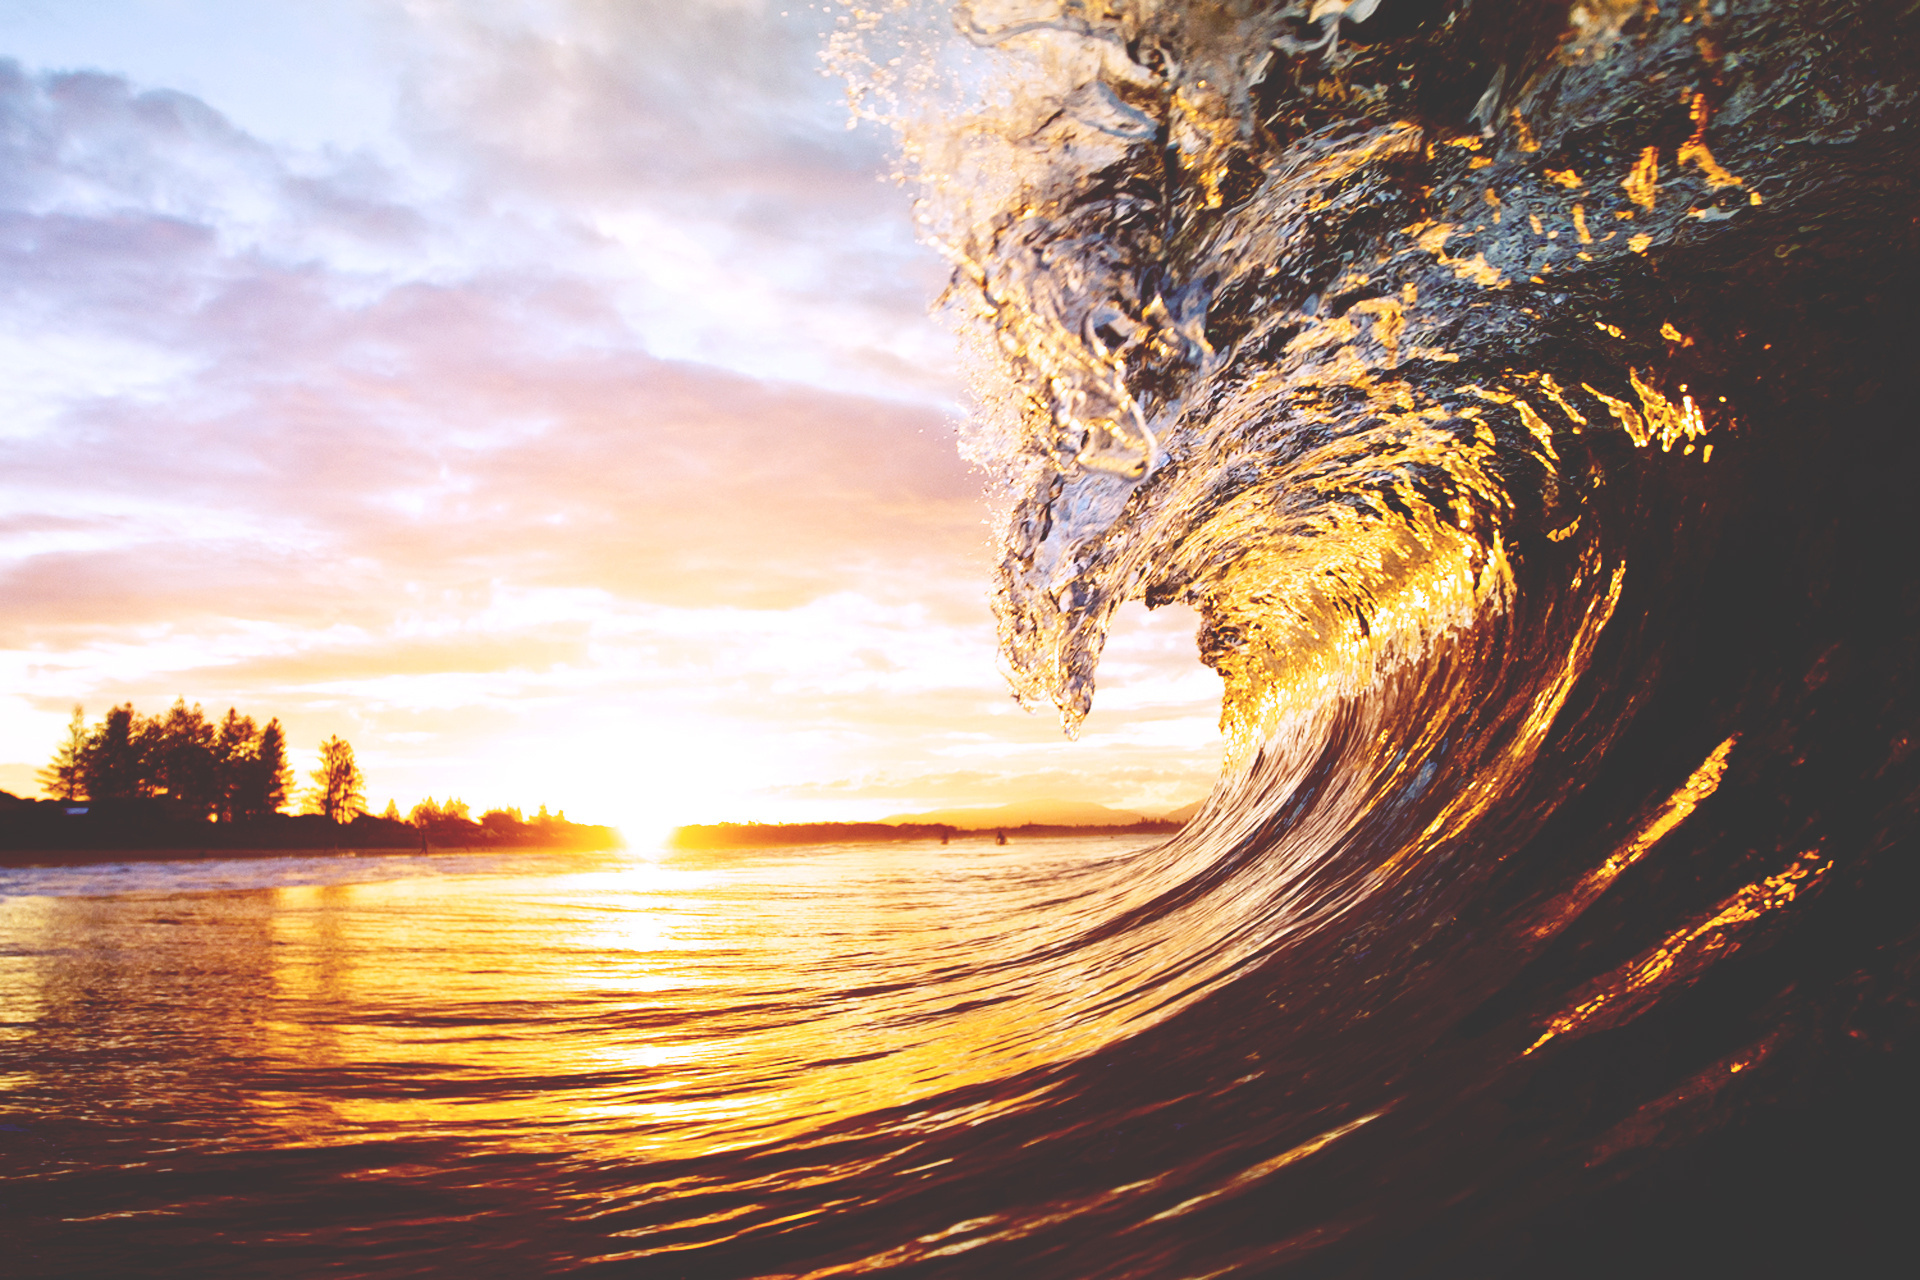 Hình nền sóng đẹp: Cùng khám phá hình nền sóng đẹp cập nhật nhất này. Với hiệu ứng chạy sóng ấn tượng, đây chắc chắn sẽ là lựa chọn hoàn hảo cho những ai yêu thích sự kì vĩ của đại dương. Hãy cùng chiêm ngưỡng và thư giãn với những cơn sóng tuyệt đẹp này nhé!